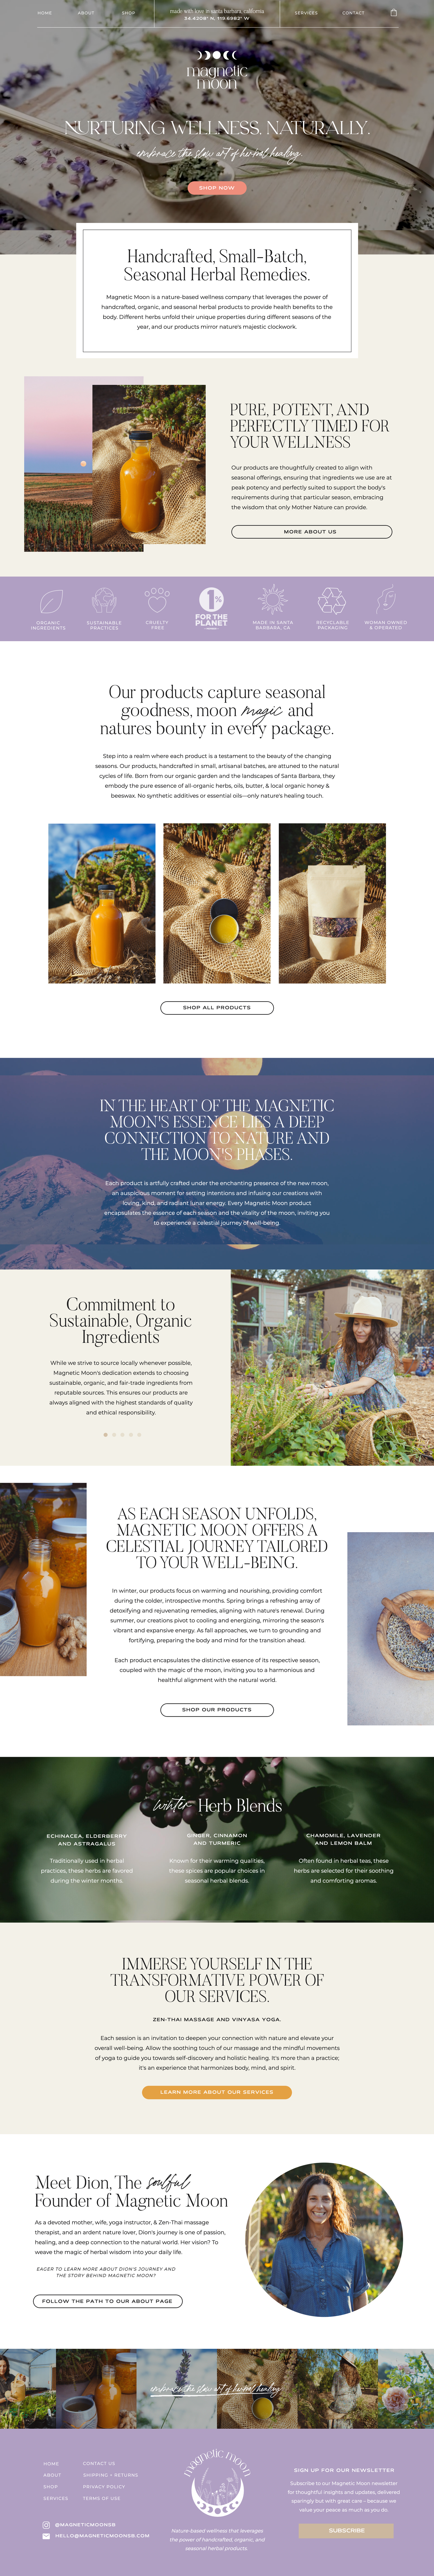 Magnetic Moon - Showit Website Design - Marra Creative Studio